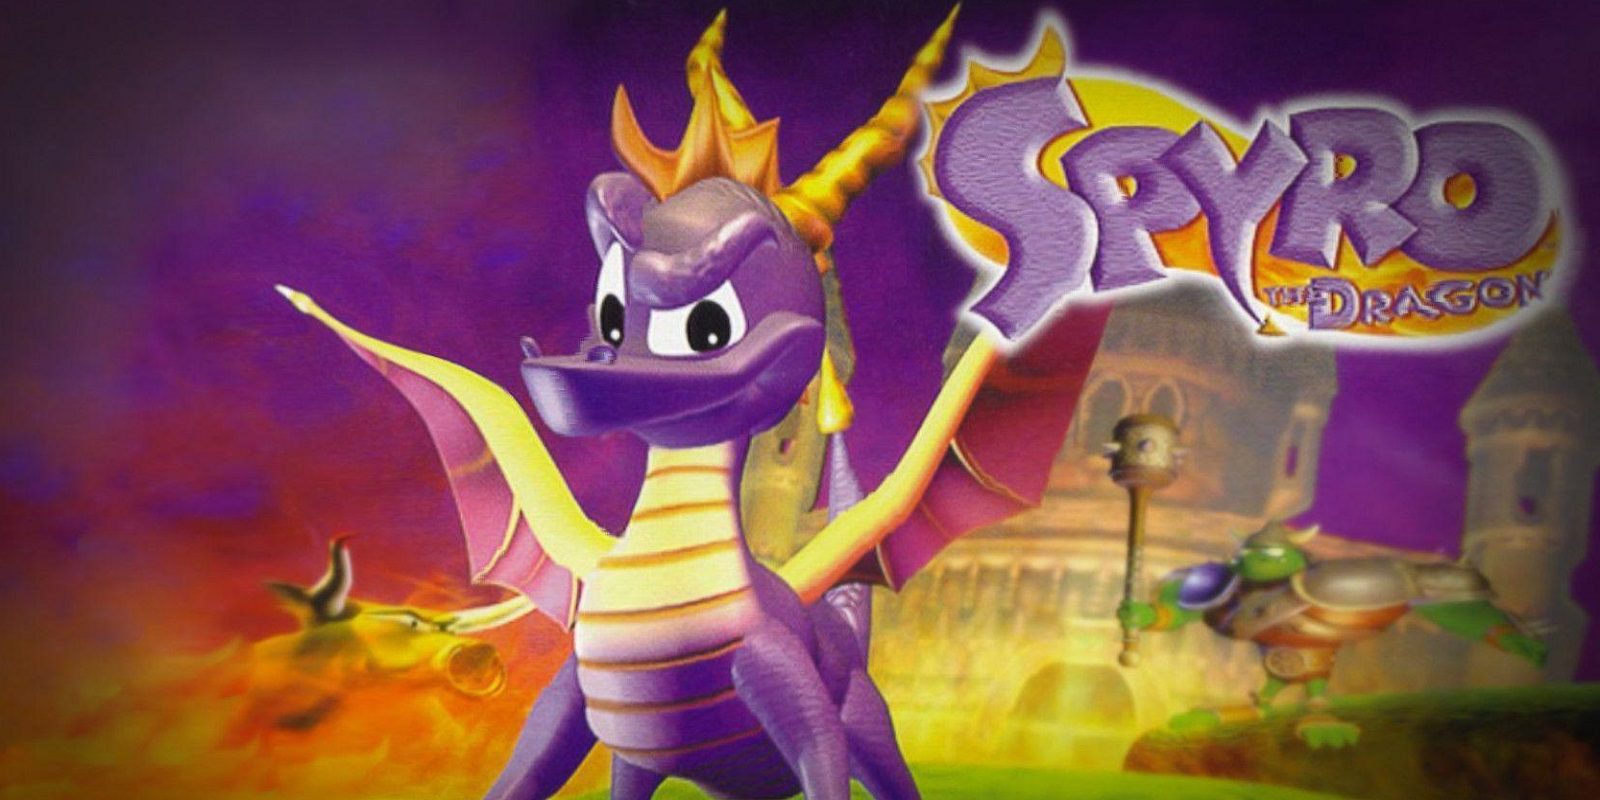 Un fan recrea 'Spyro the Dragon' con tecnología actual mediante Unreal Engine 4